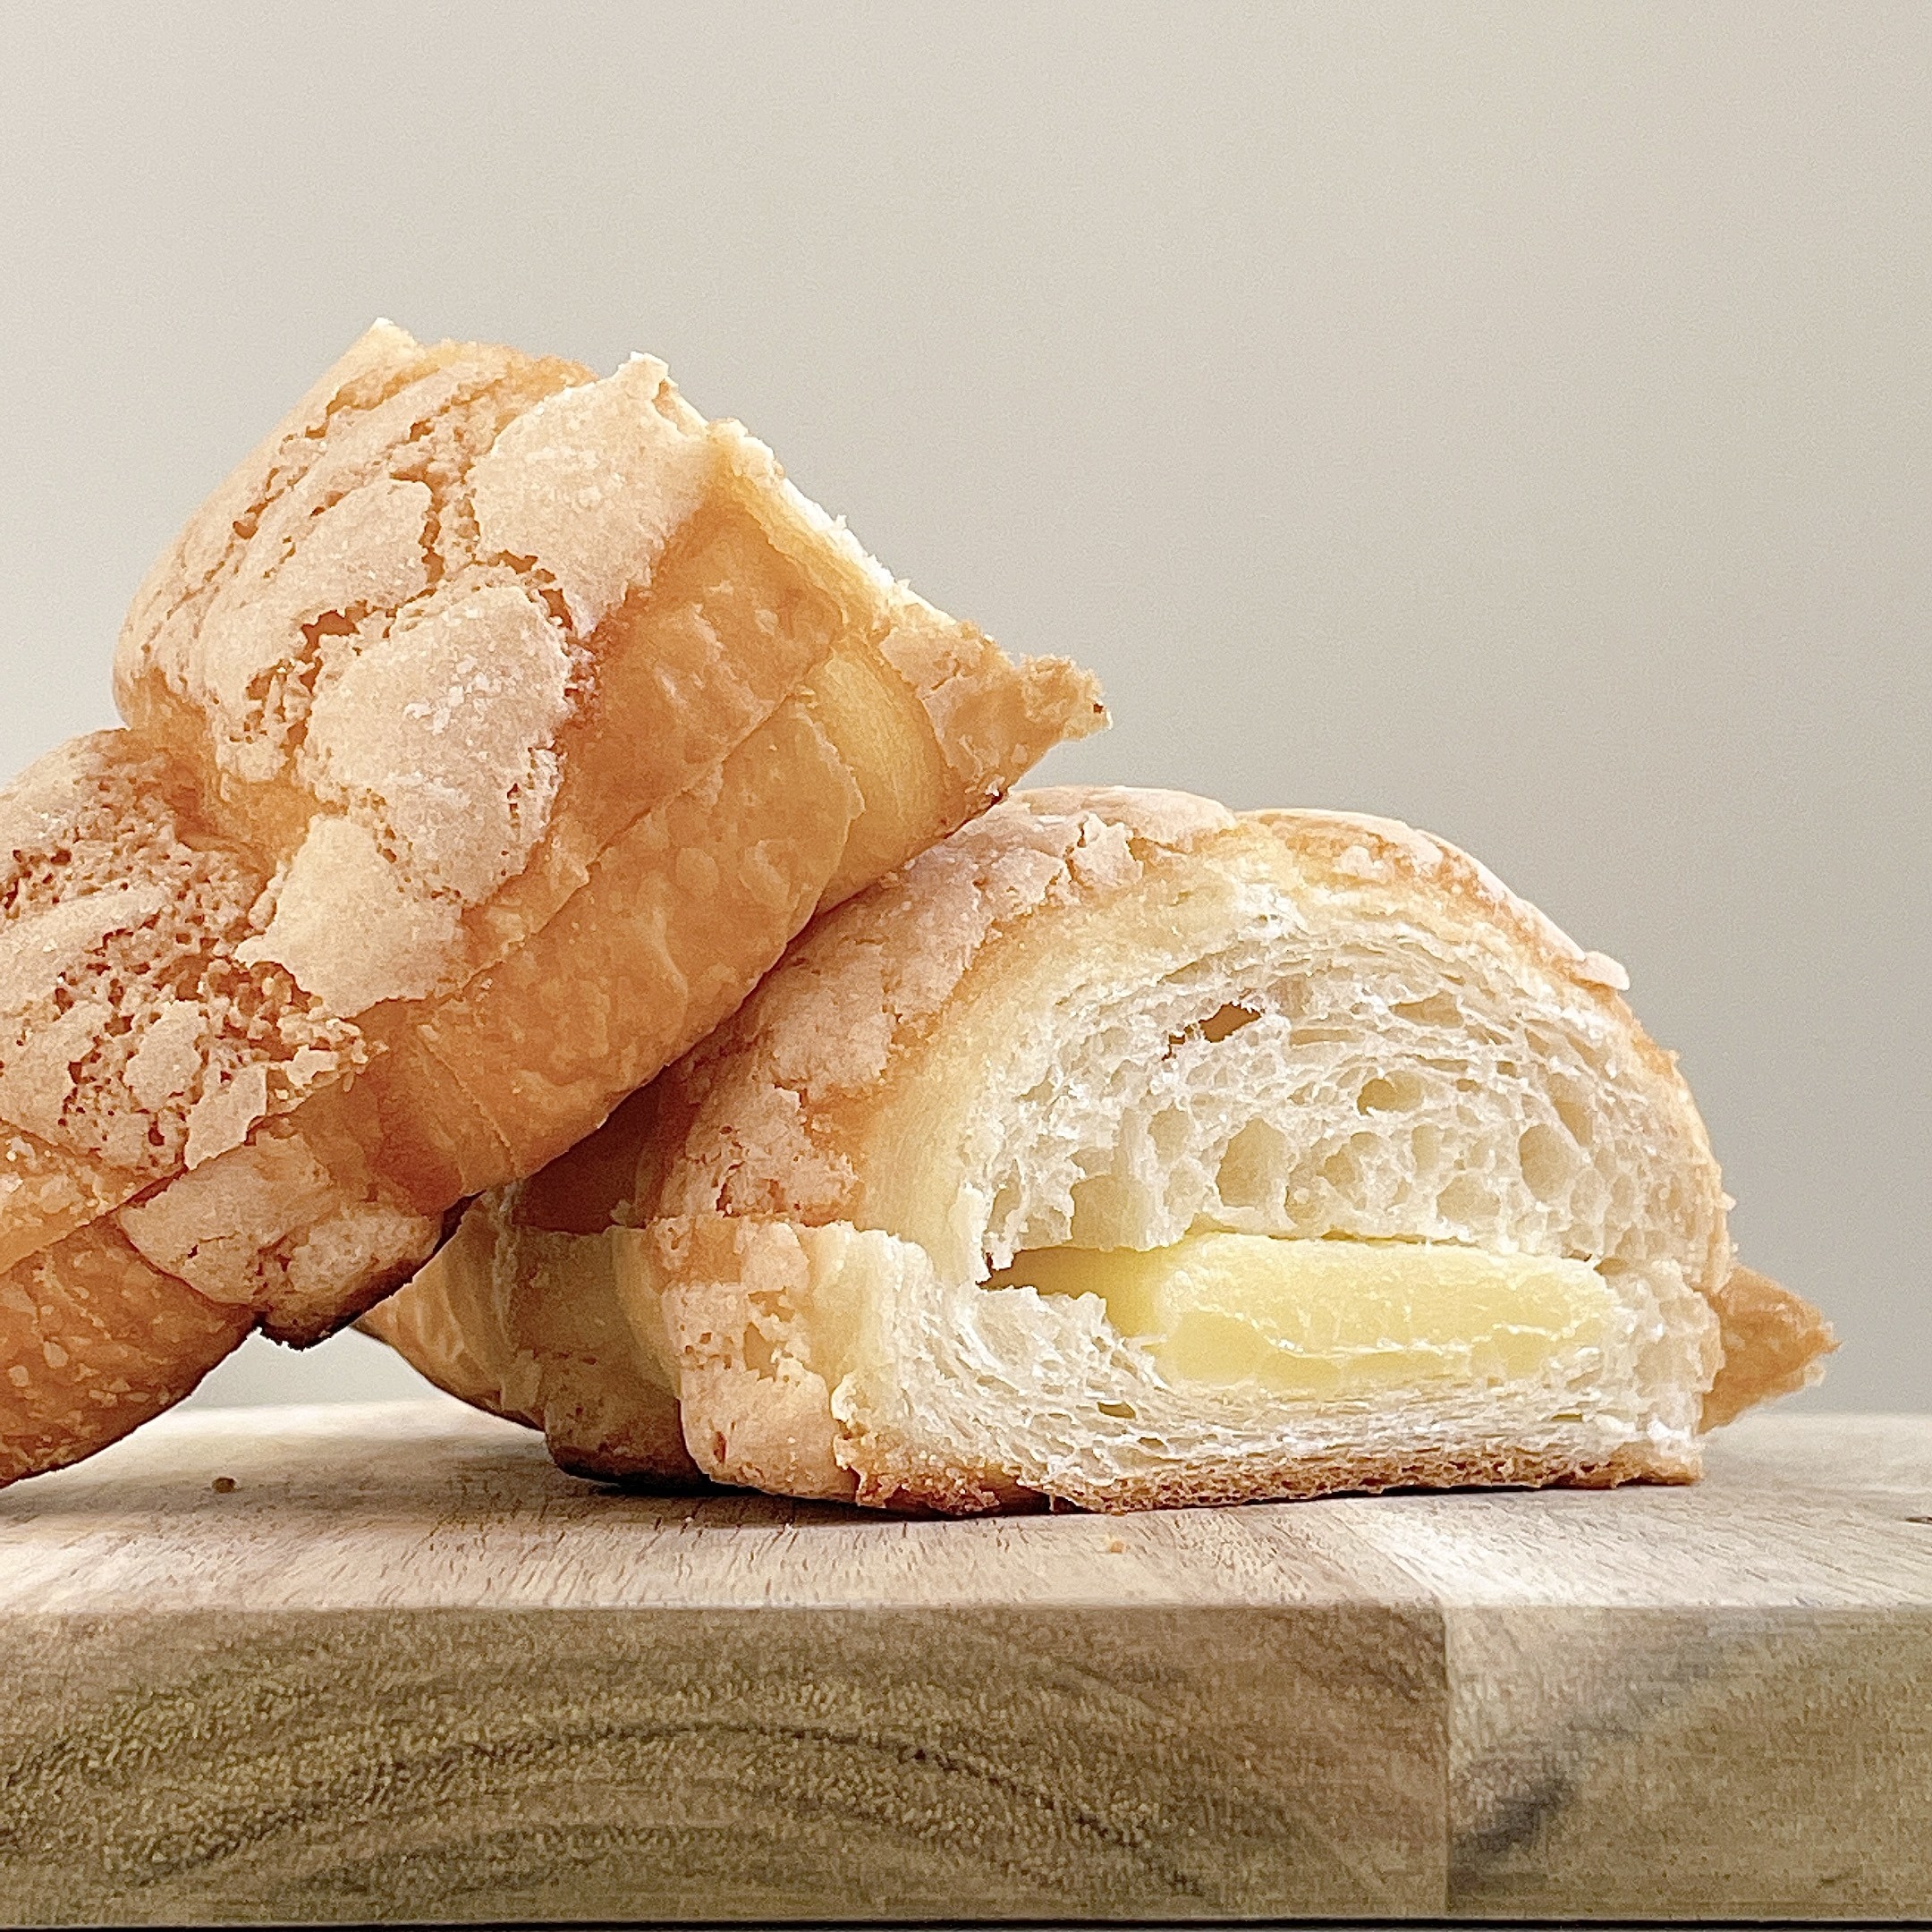 FamilyMart（ファミリーマート）のおすすめのパン「マカロンクロワッサン（発酵バター入りクリーム）」